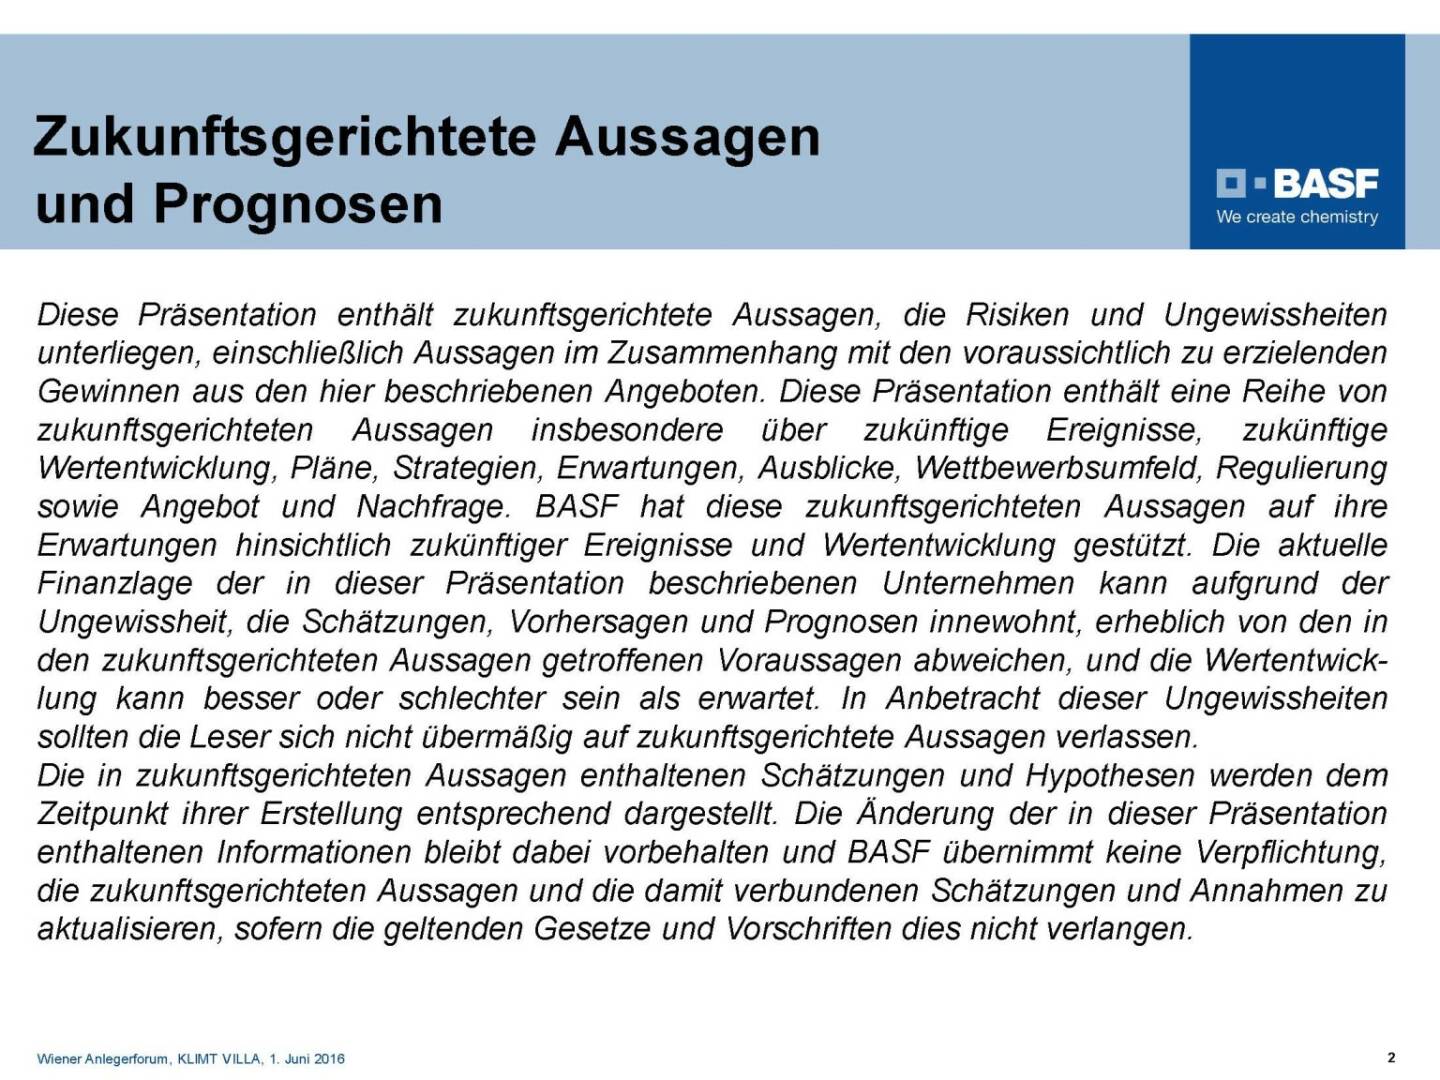 BASF - Aussagen und Prognosen